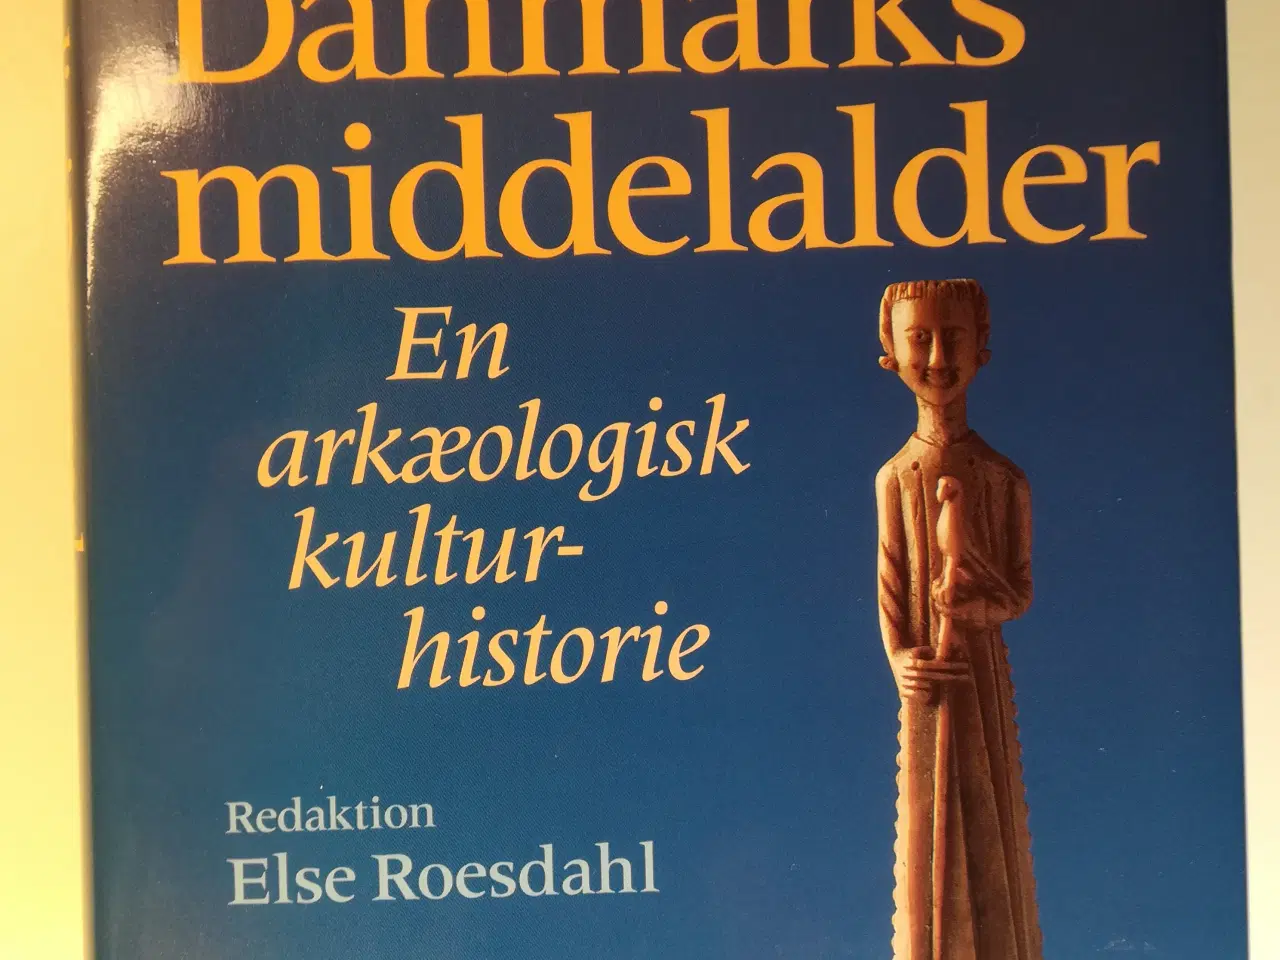 Billede 1 - Dagligliv i Danmarks middelalder, Else Roesdahl   